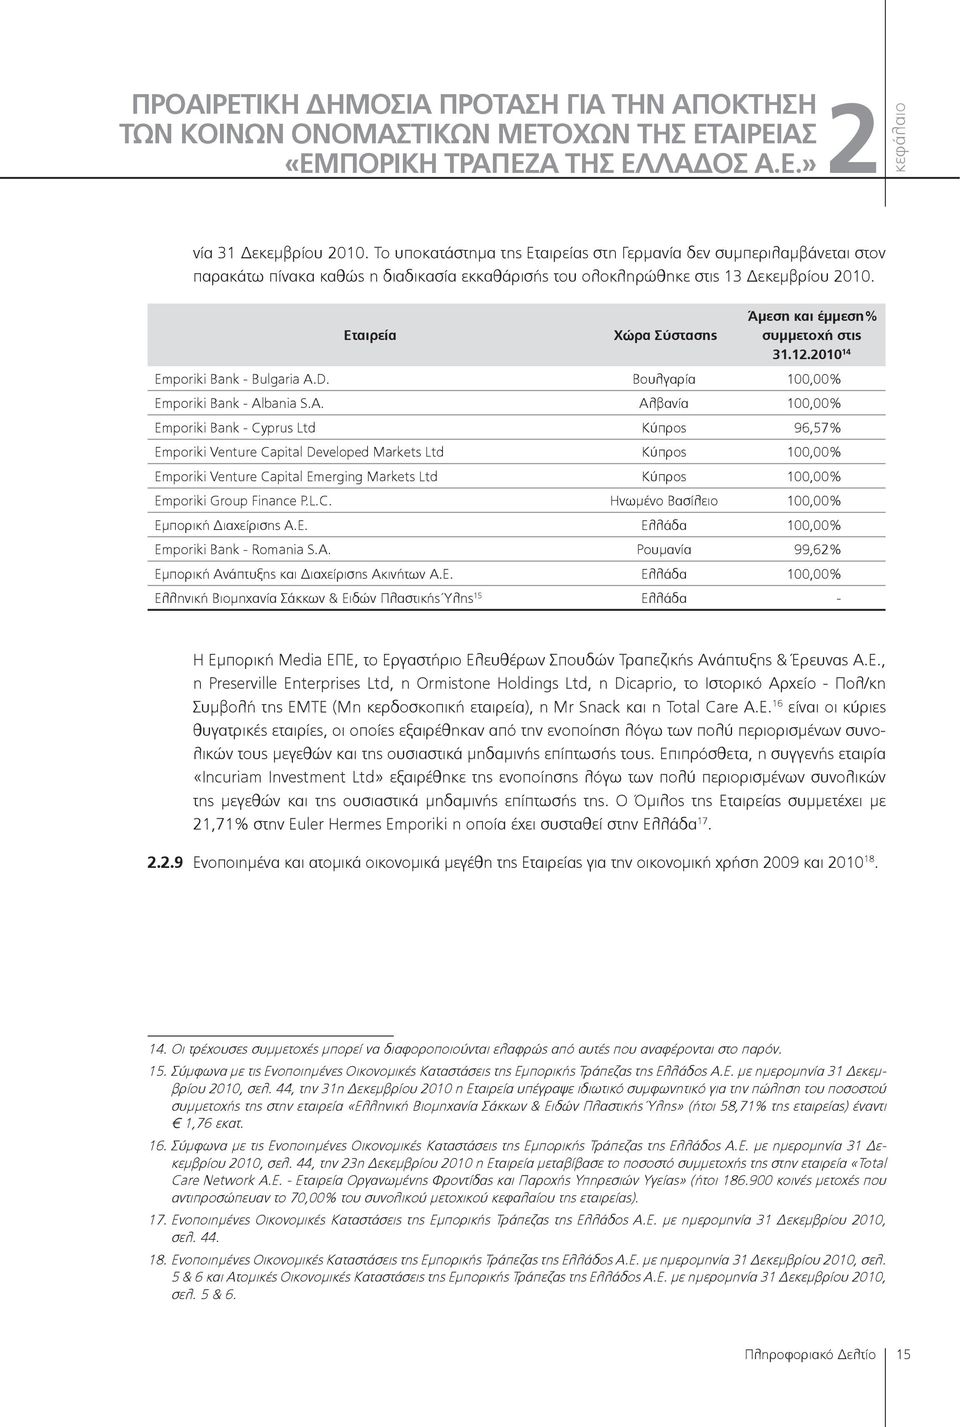 Εταιρεία Χώρα Σύστασης Άμεση και έμμεση% συμμετοχή στις 31.12.2010 14 Emporiki Bank - Bulgaria A.